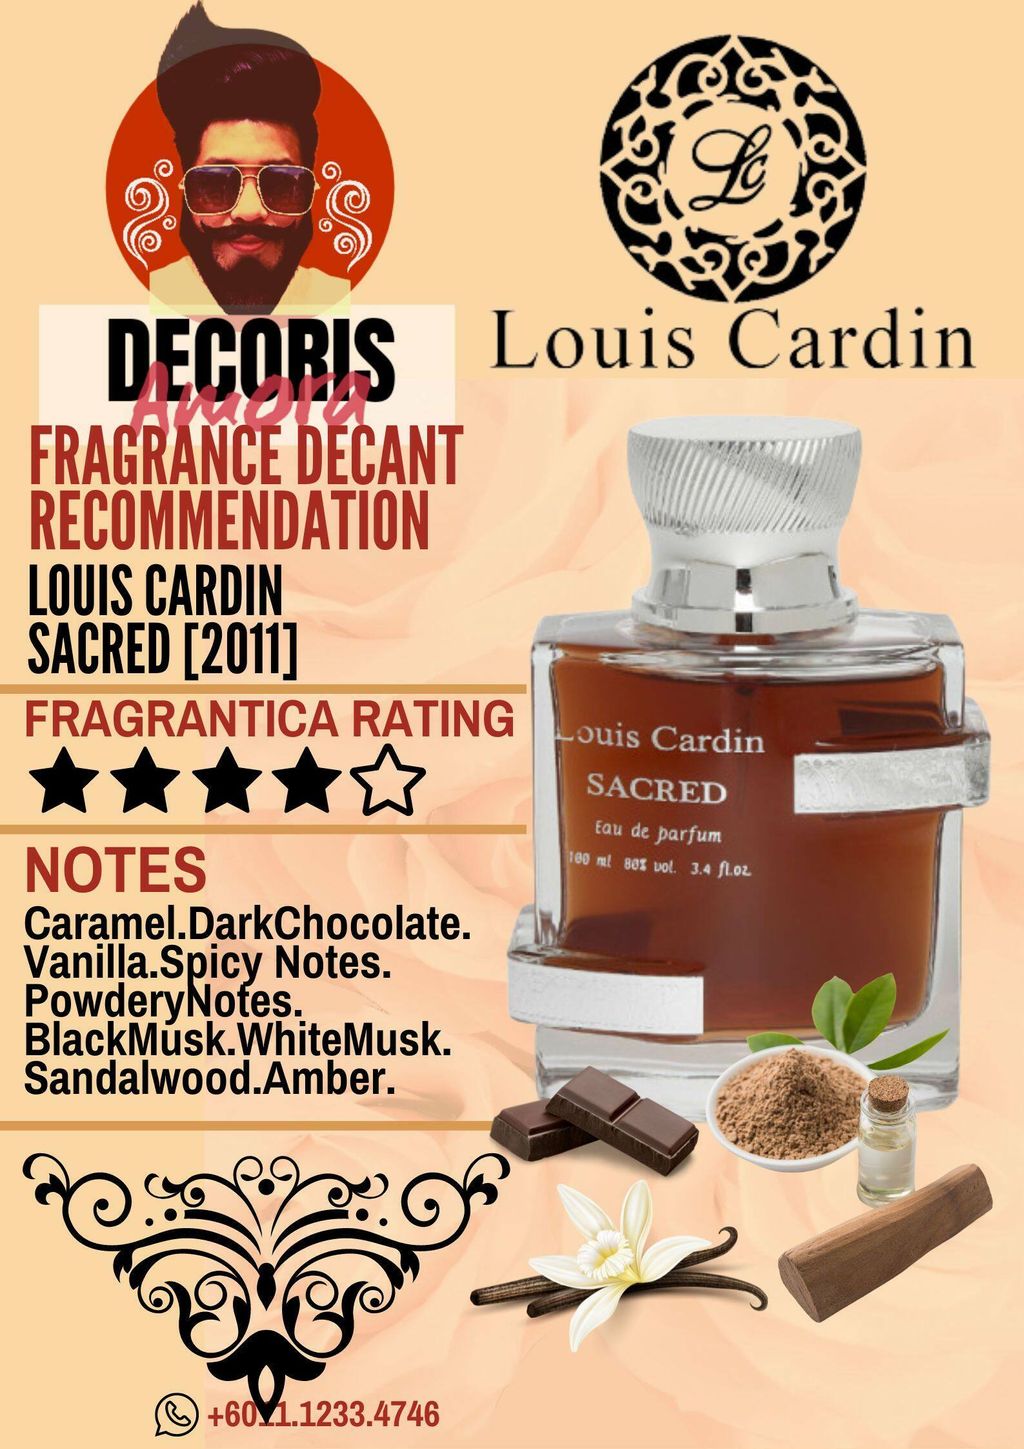 Louis Cardin Sacred. #louiscardin #louiscardinsacred #fragrancetiktok, Fragrance